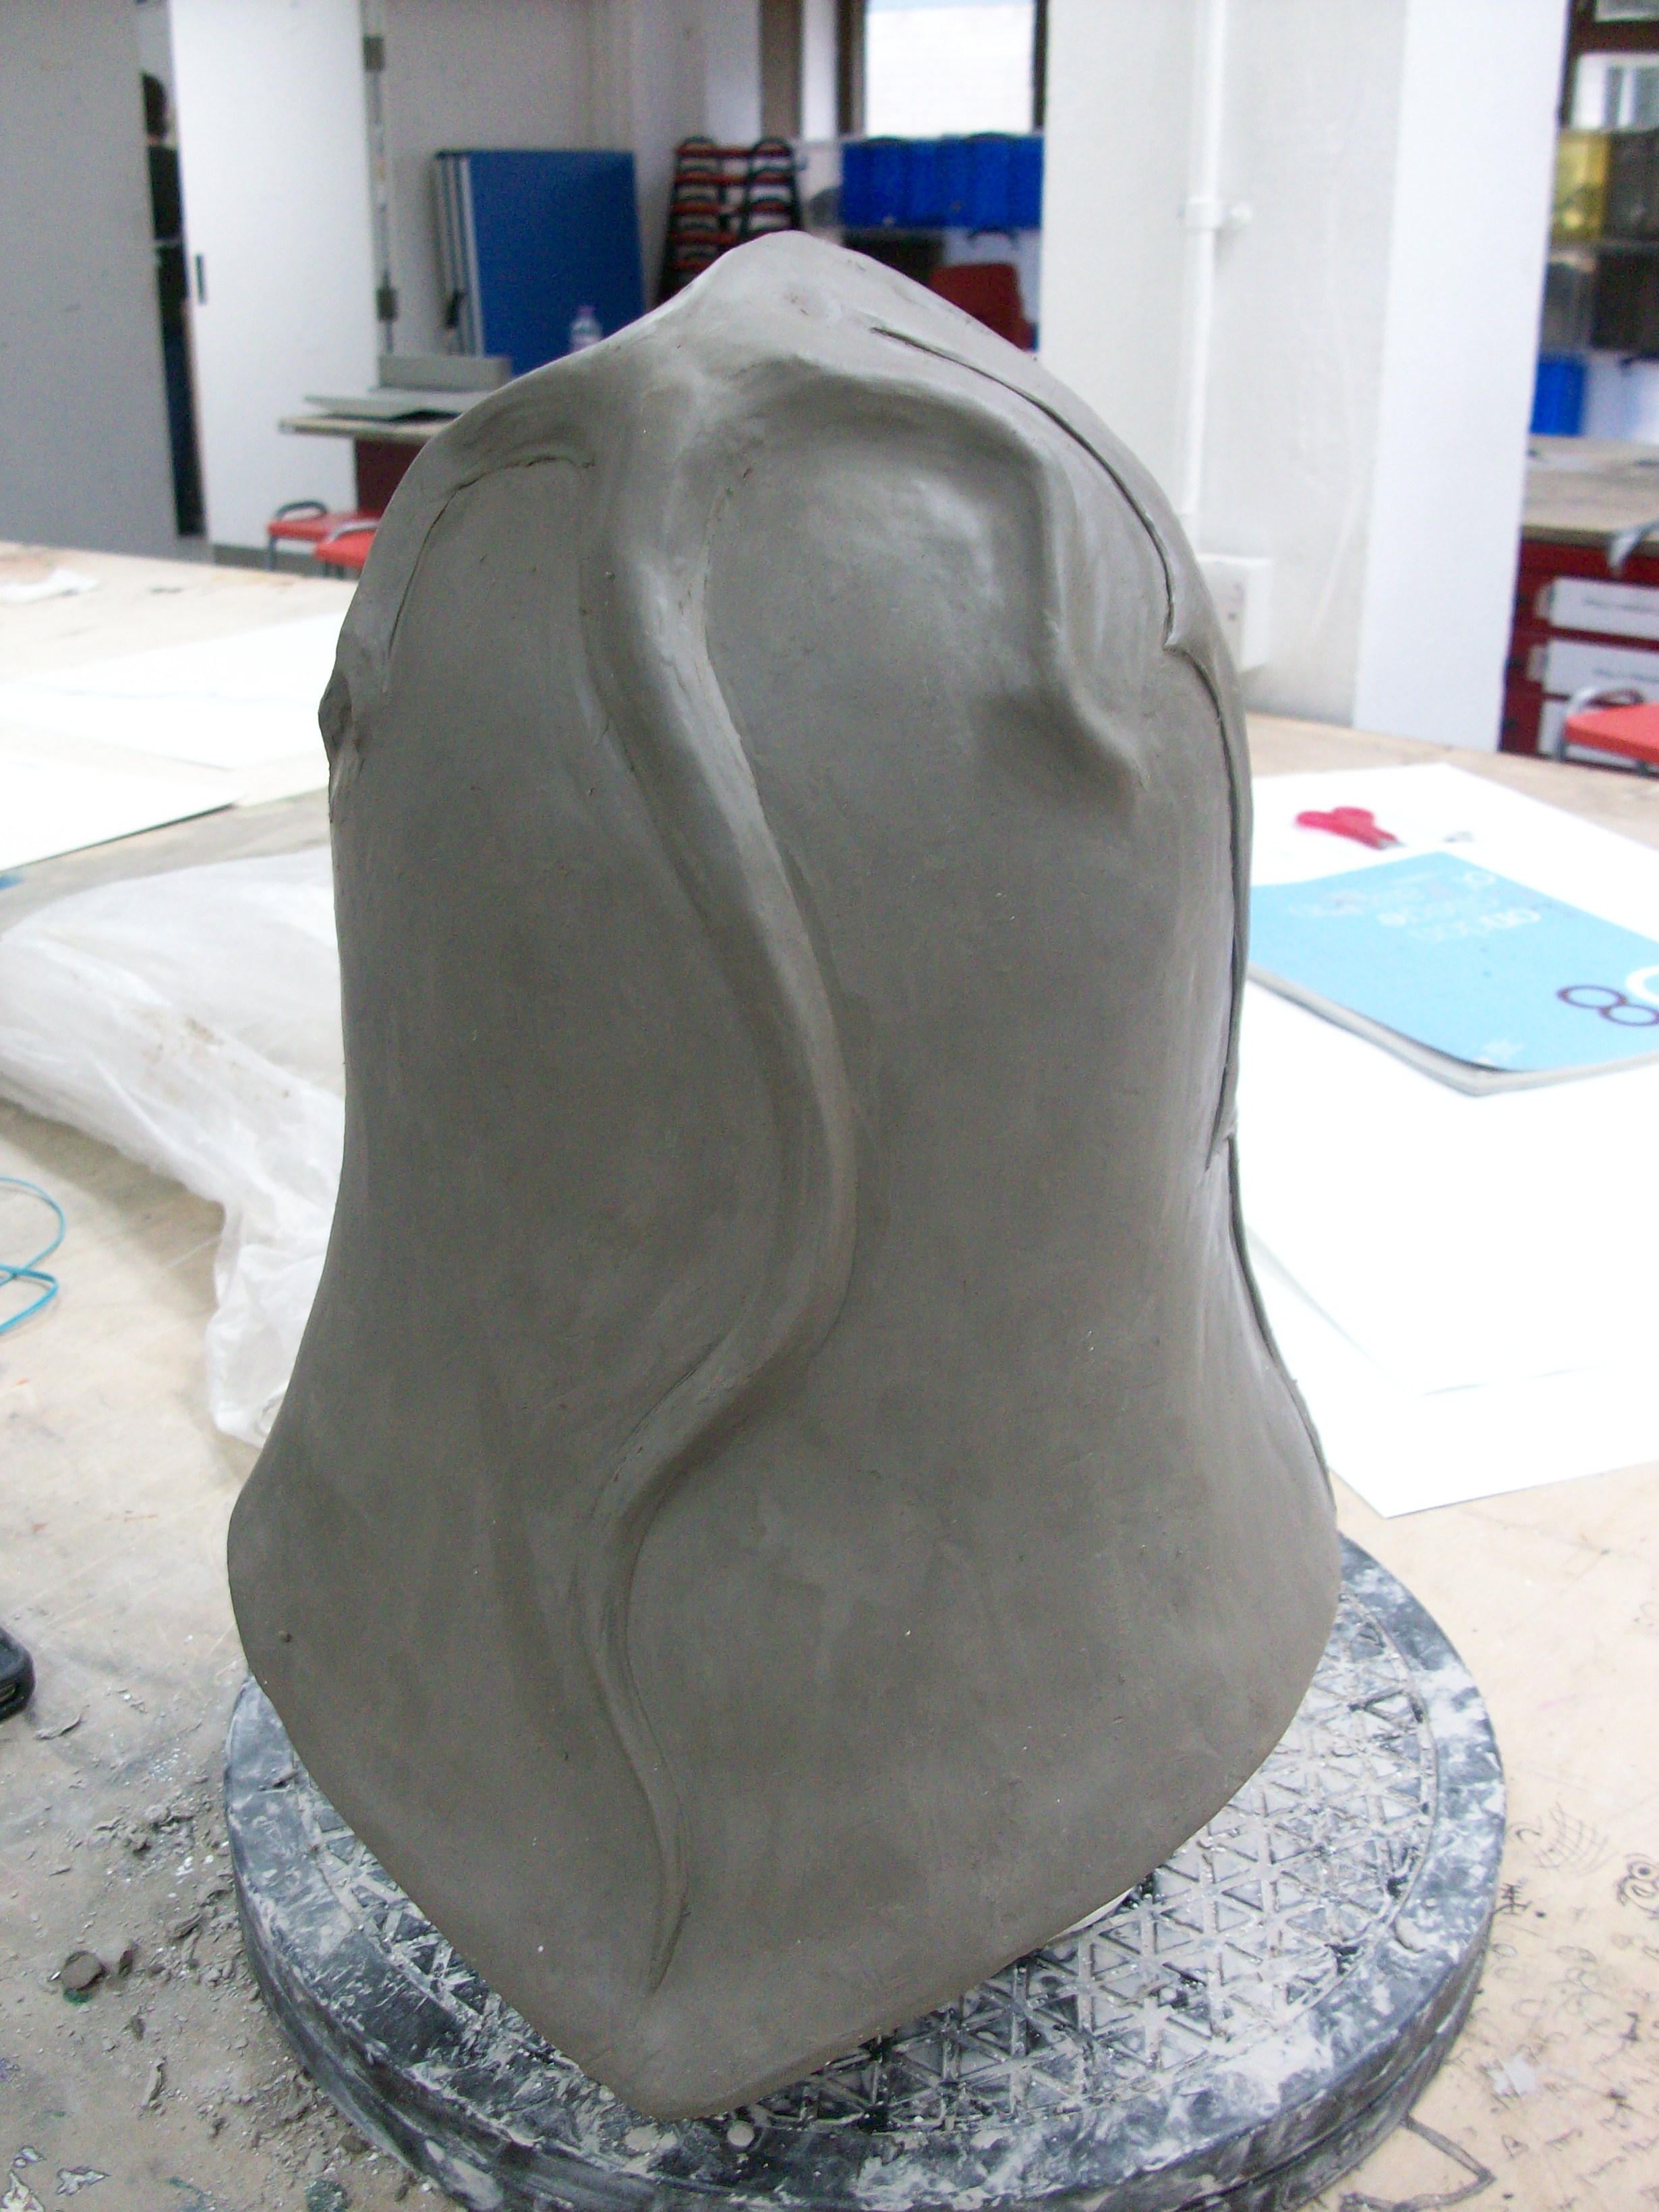 Dragon helmet sculpt